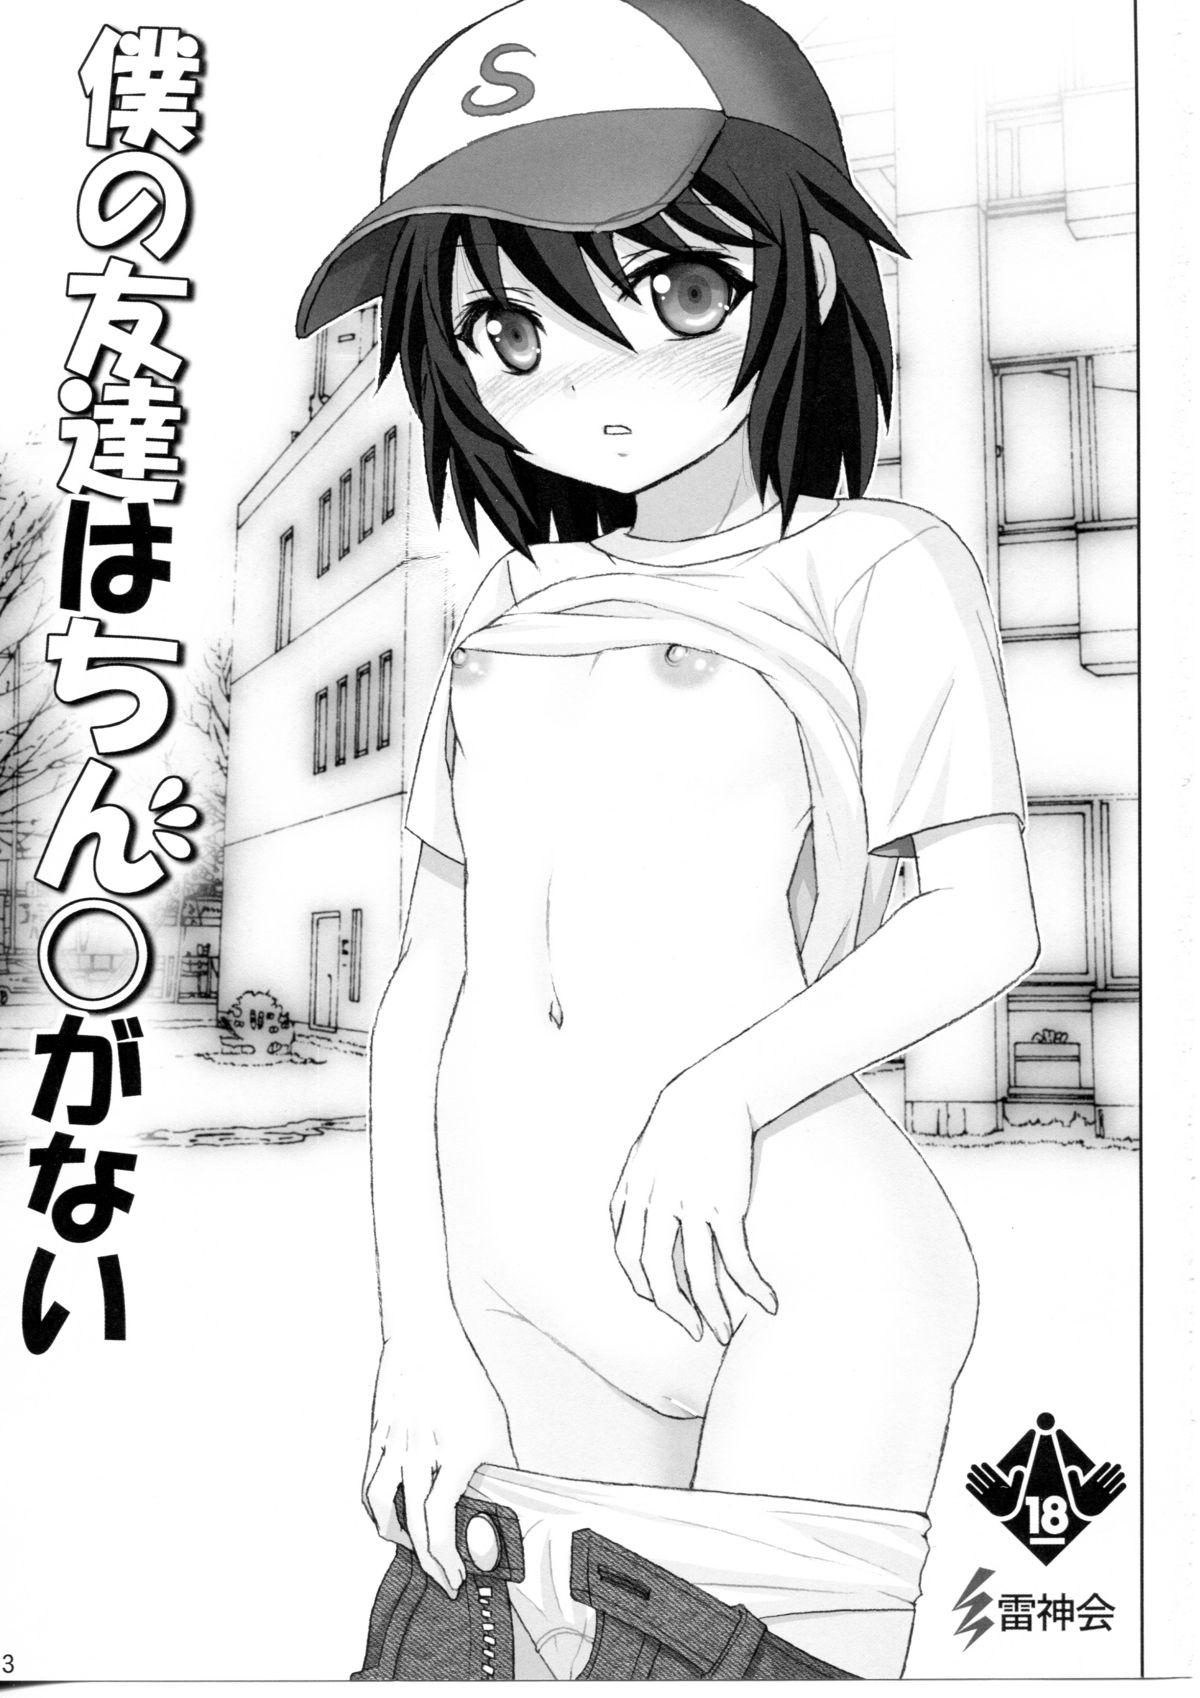 Rub Boku no Tomodachi wa Chin○ ga Nai - Boku wa tomodachi ga sukunai Small Tits Porn - Page 2